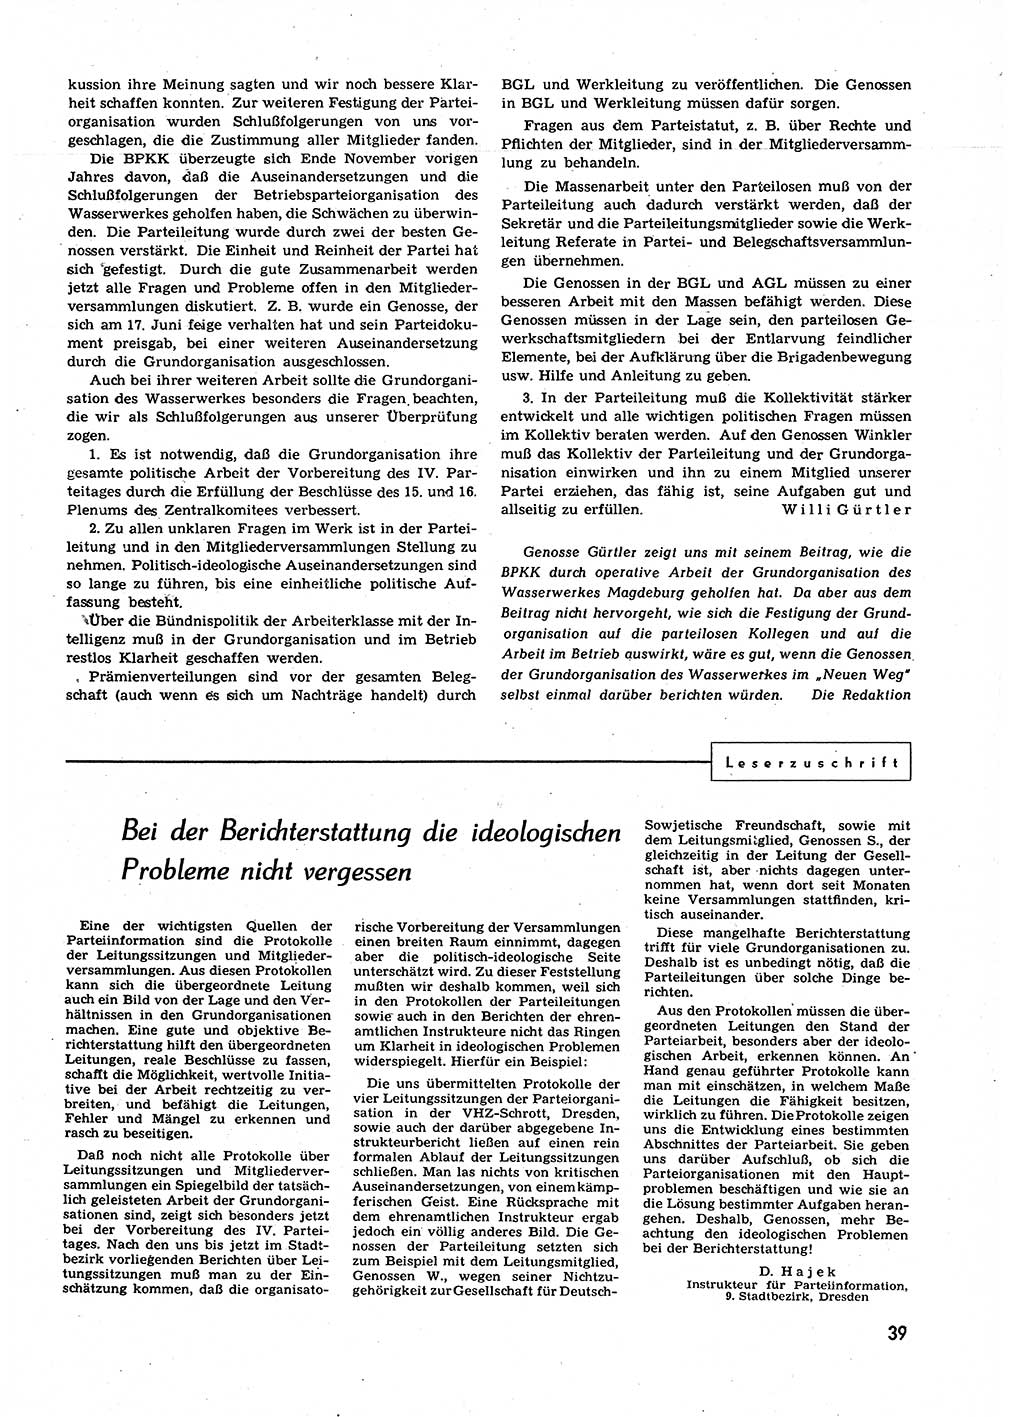 Neuer Weg (NW), Organ des Zentralkomitees (ZK) der SED (Sozialistische Einheitspartei Deutschlands) für alle Parteiarbeiter, 9. Jahrgang [Deutsche Demokratische Republik (DDR)] 1954, Heft 3/39 (NW ZK SED DDR 1954, H. 3/39)